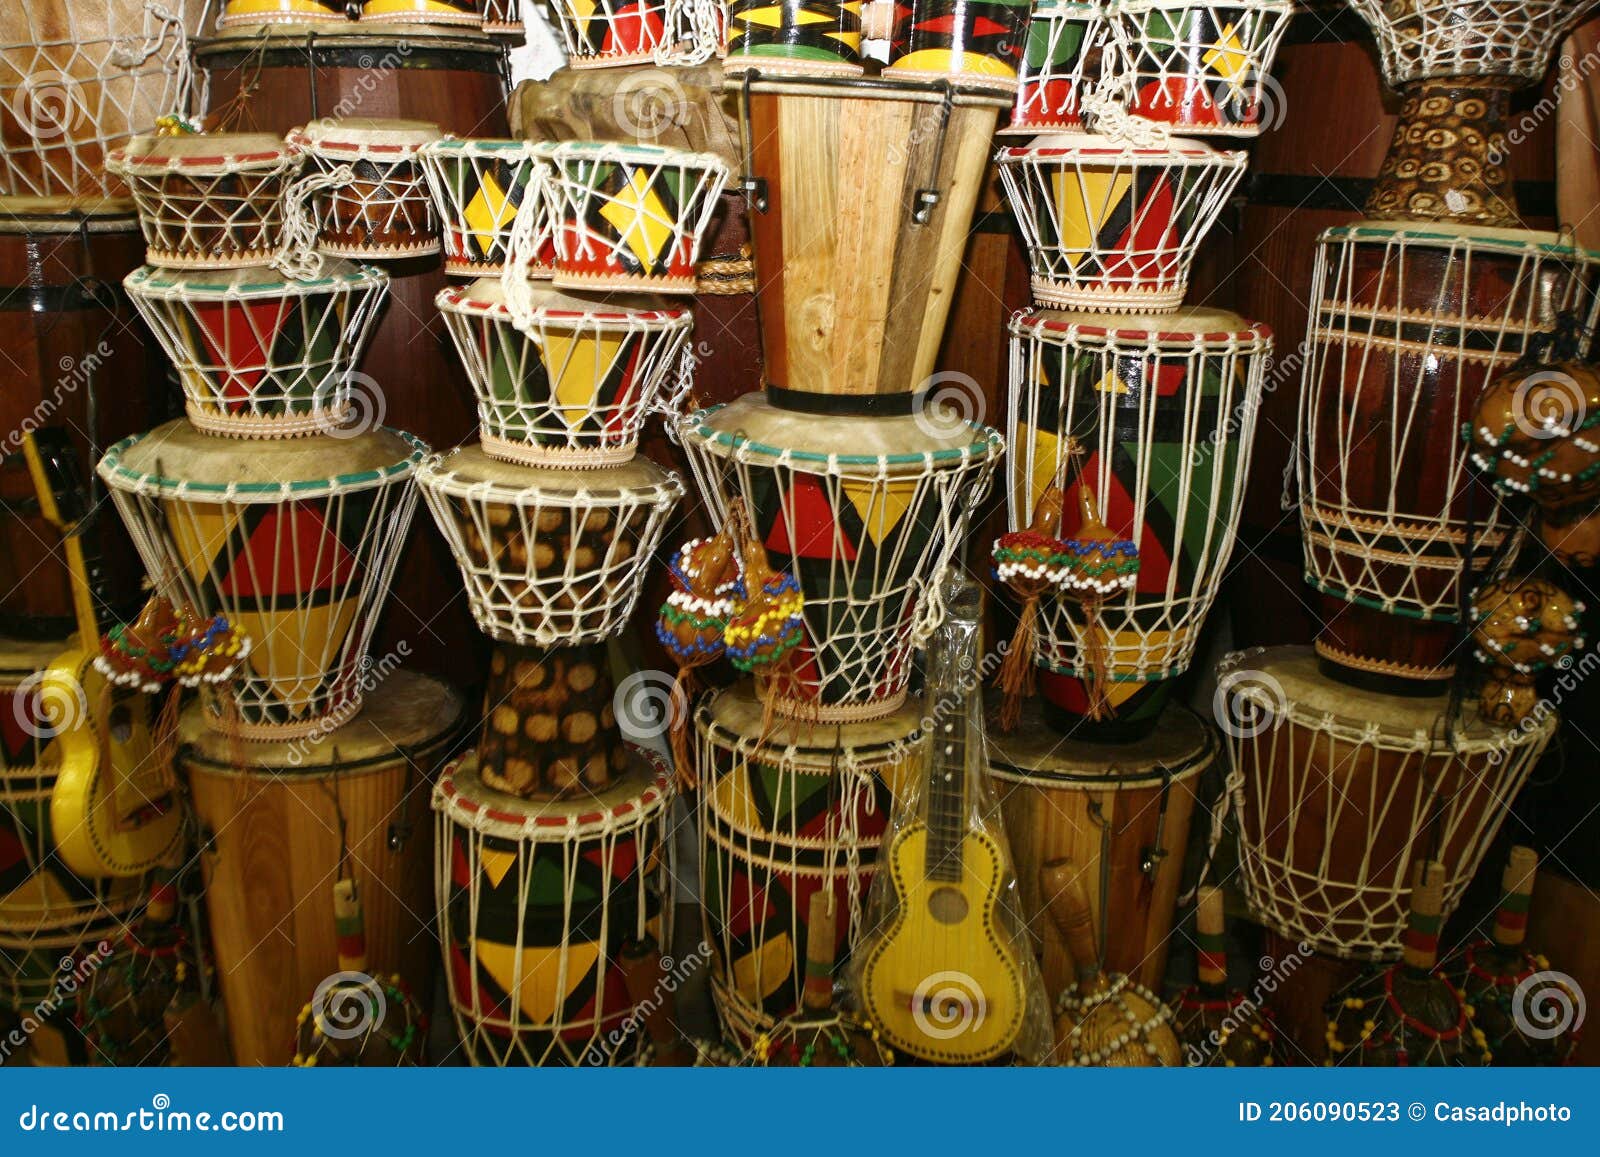 Atabaque Afro Braziliaanse Muziekinstrumenten Stock Afbeelding - Image afro, 206090523